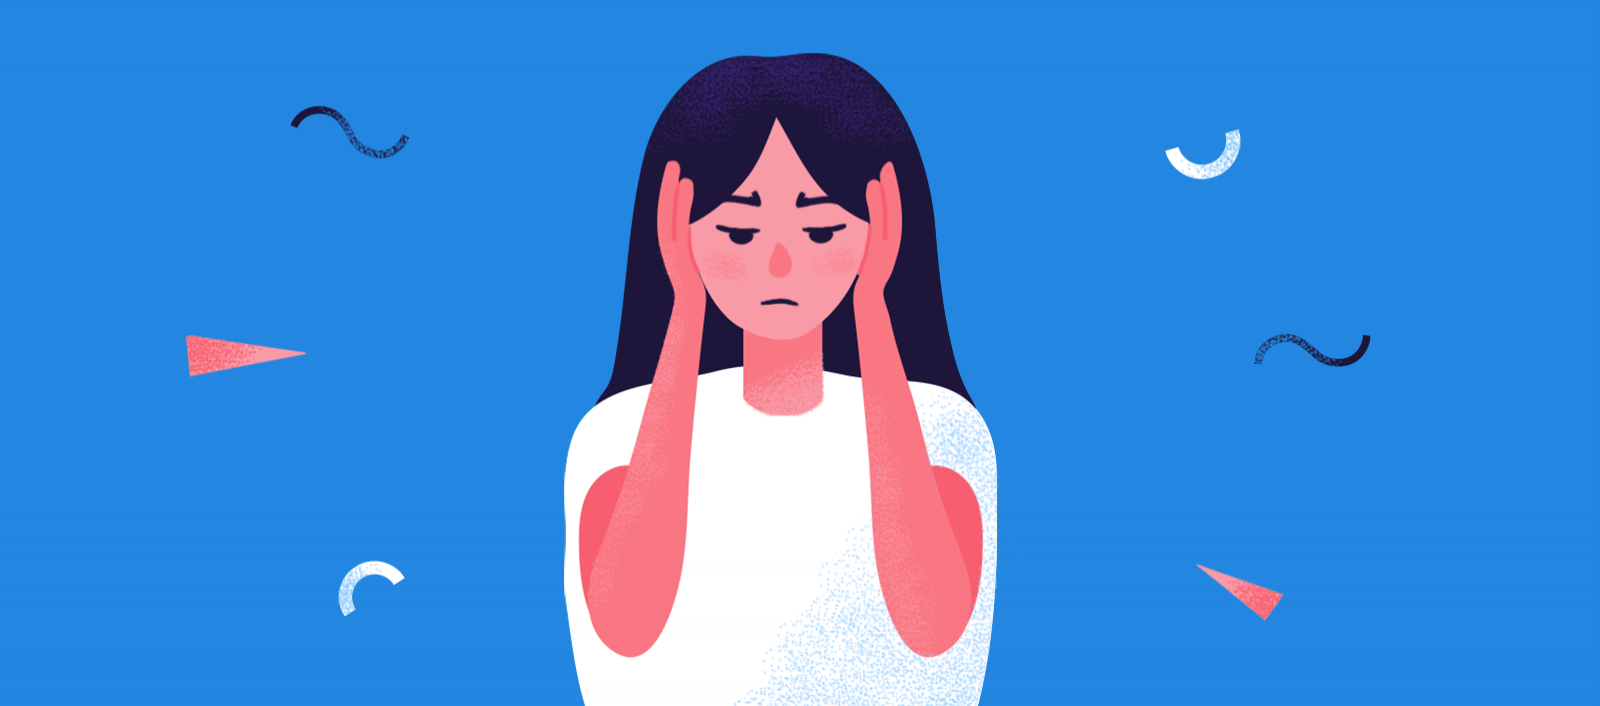 焦虑导致下巴疼痛时该怎么办